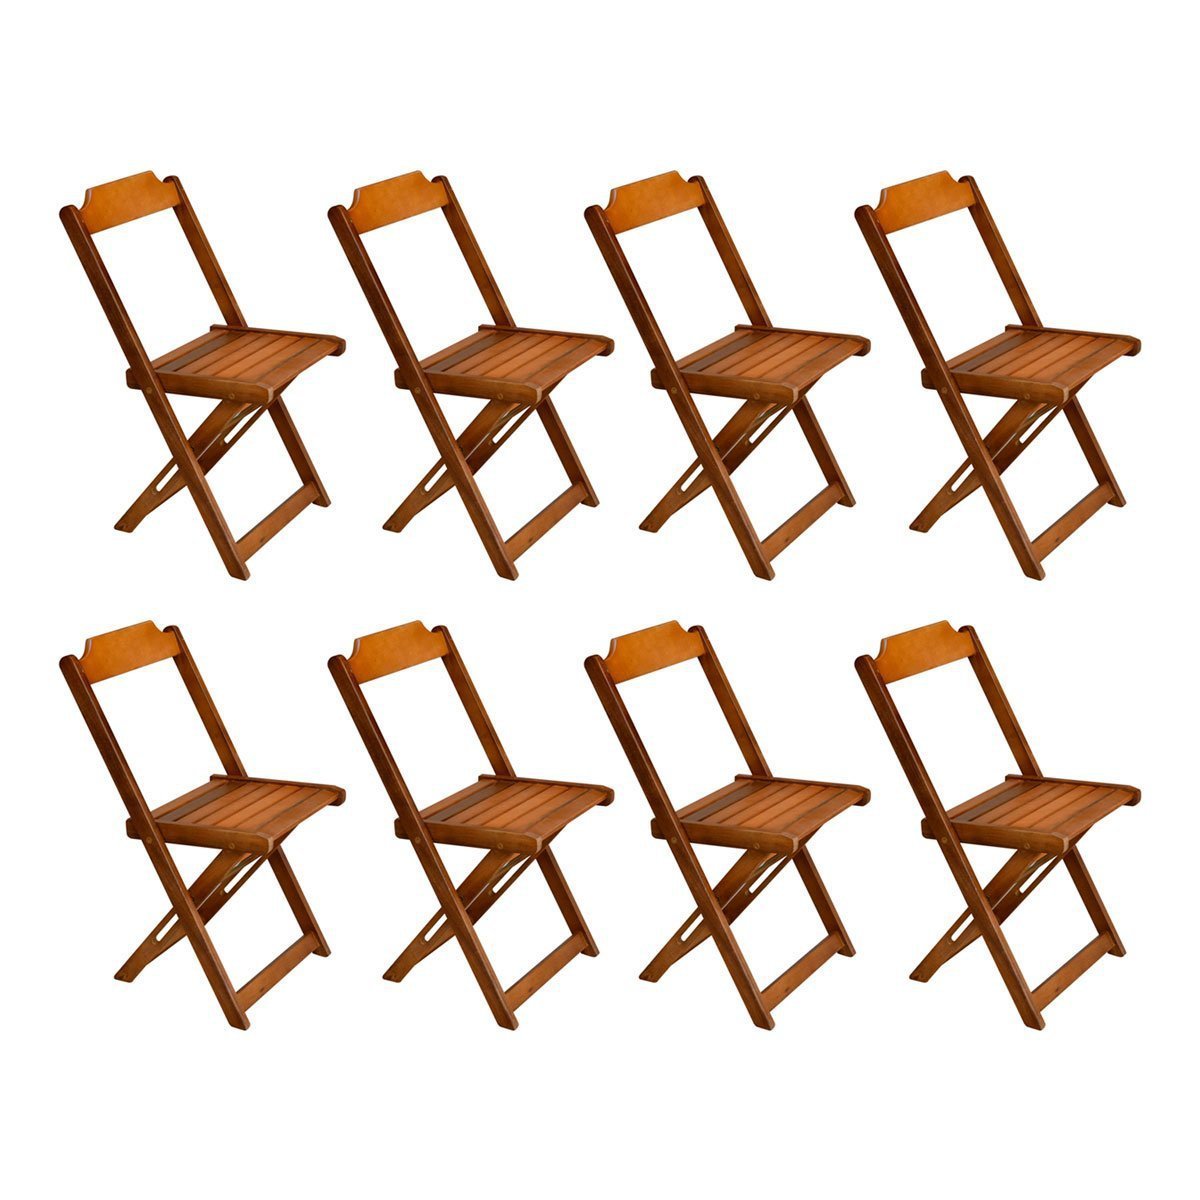 Kit com 8 Cadeiras Dobrável em Madeira Maciça - Mel - 1